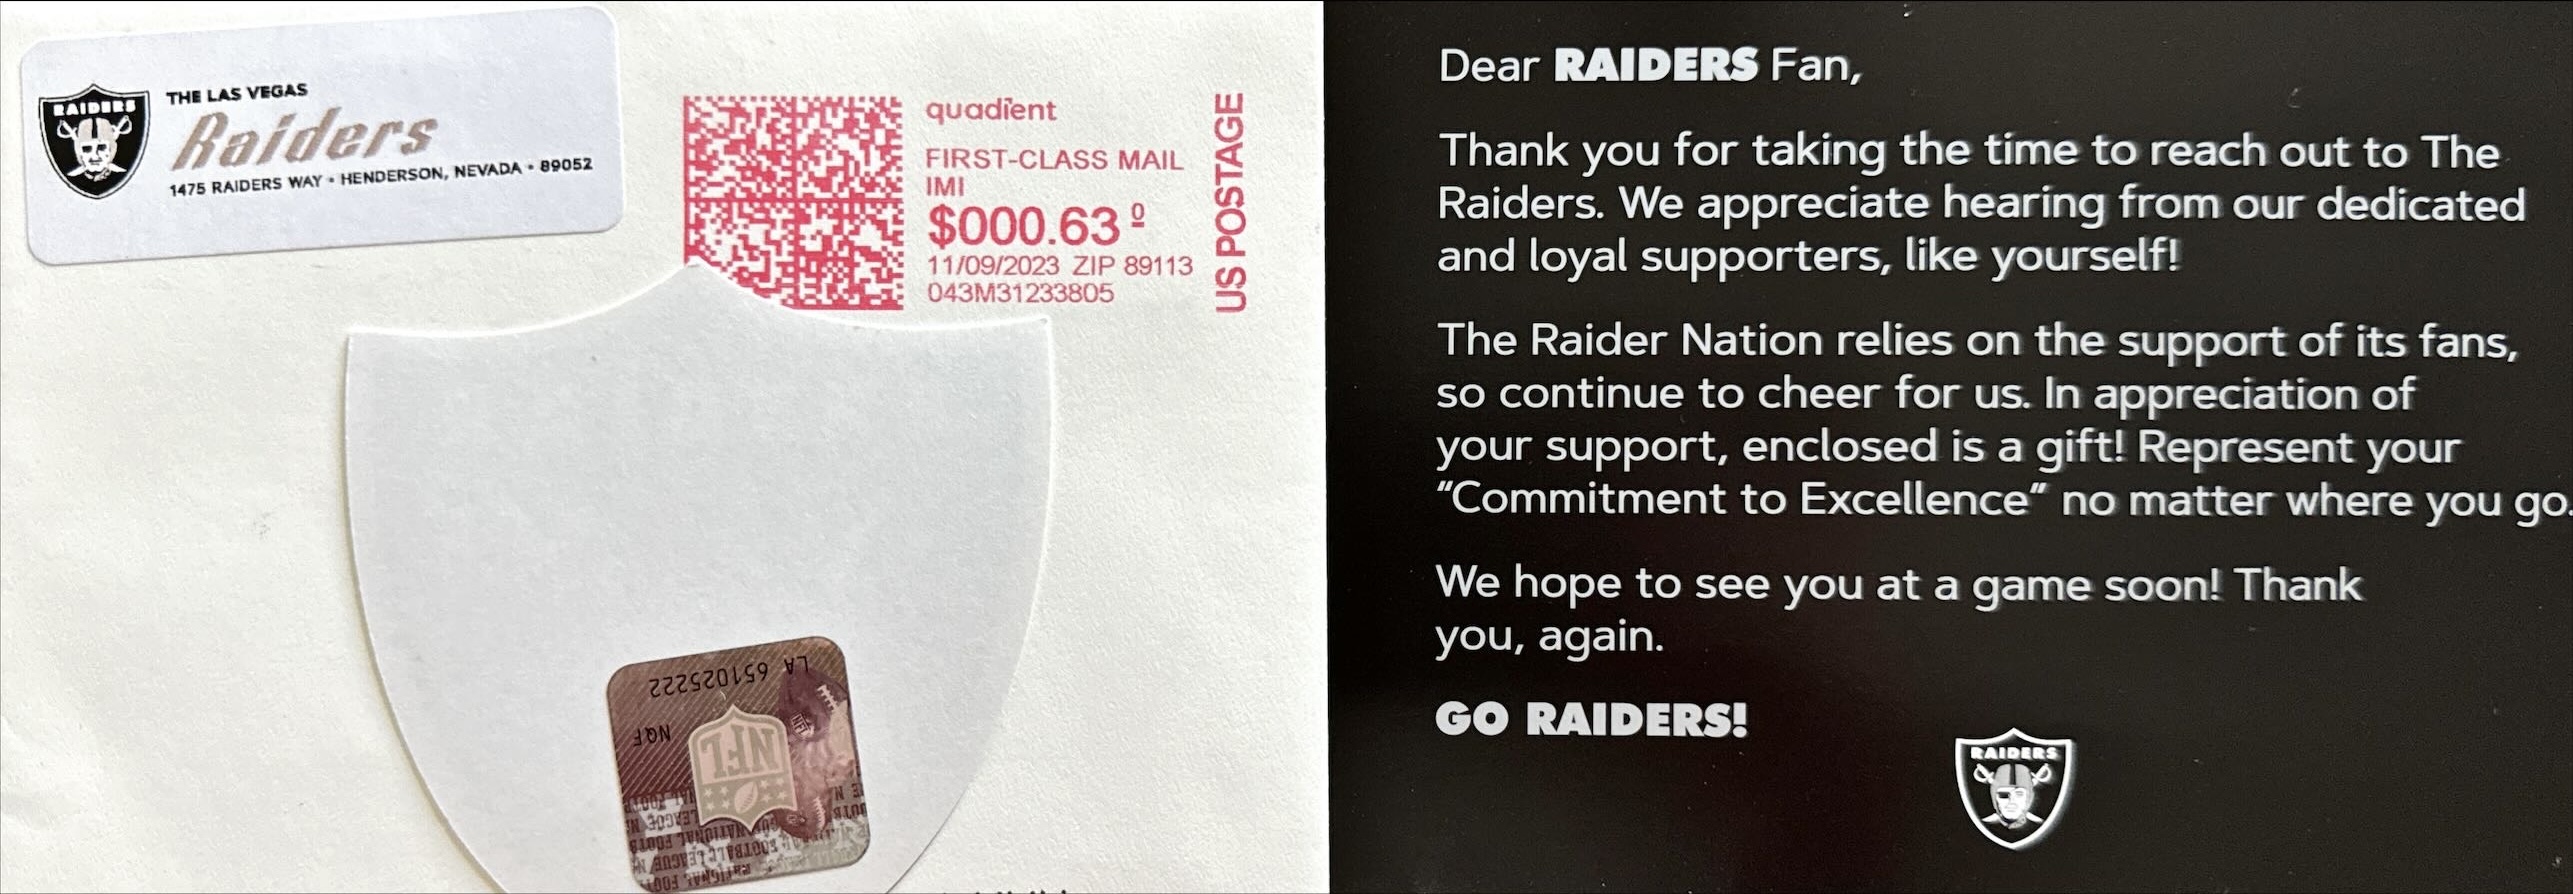 Las Vegas Raiders Letter